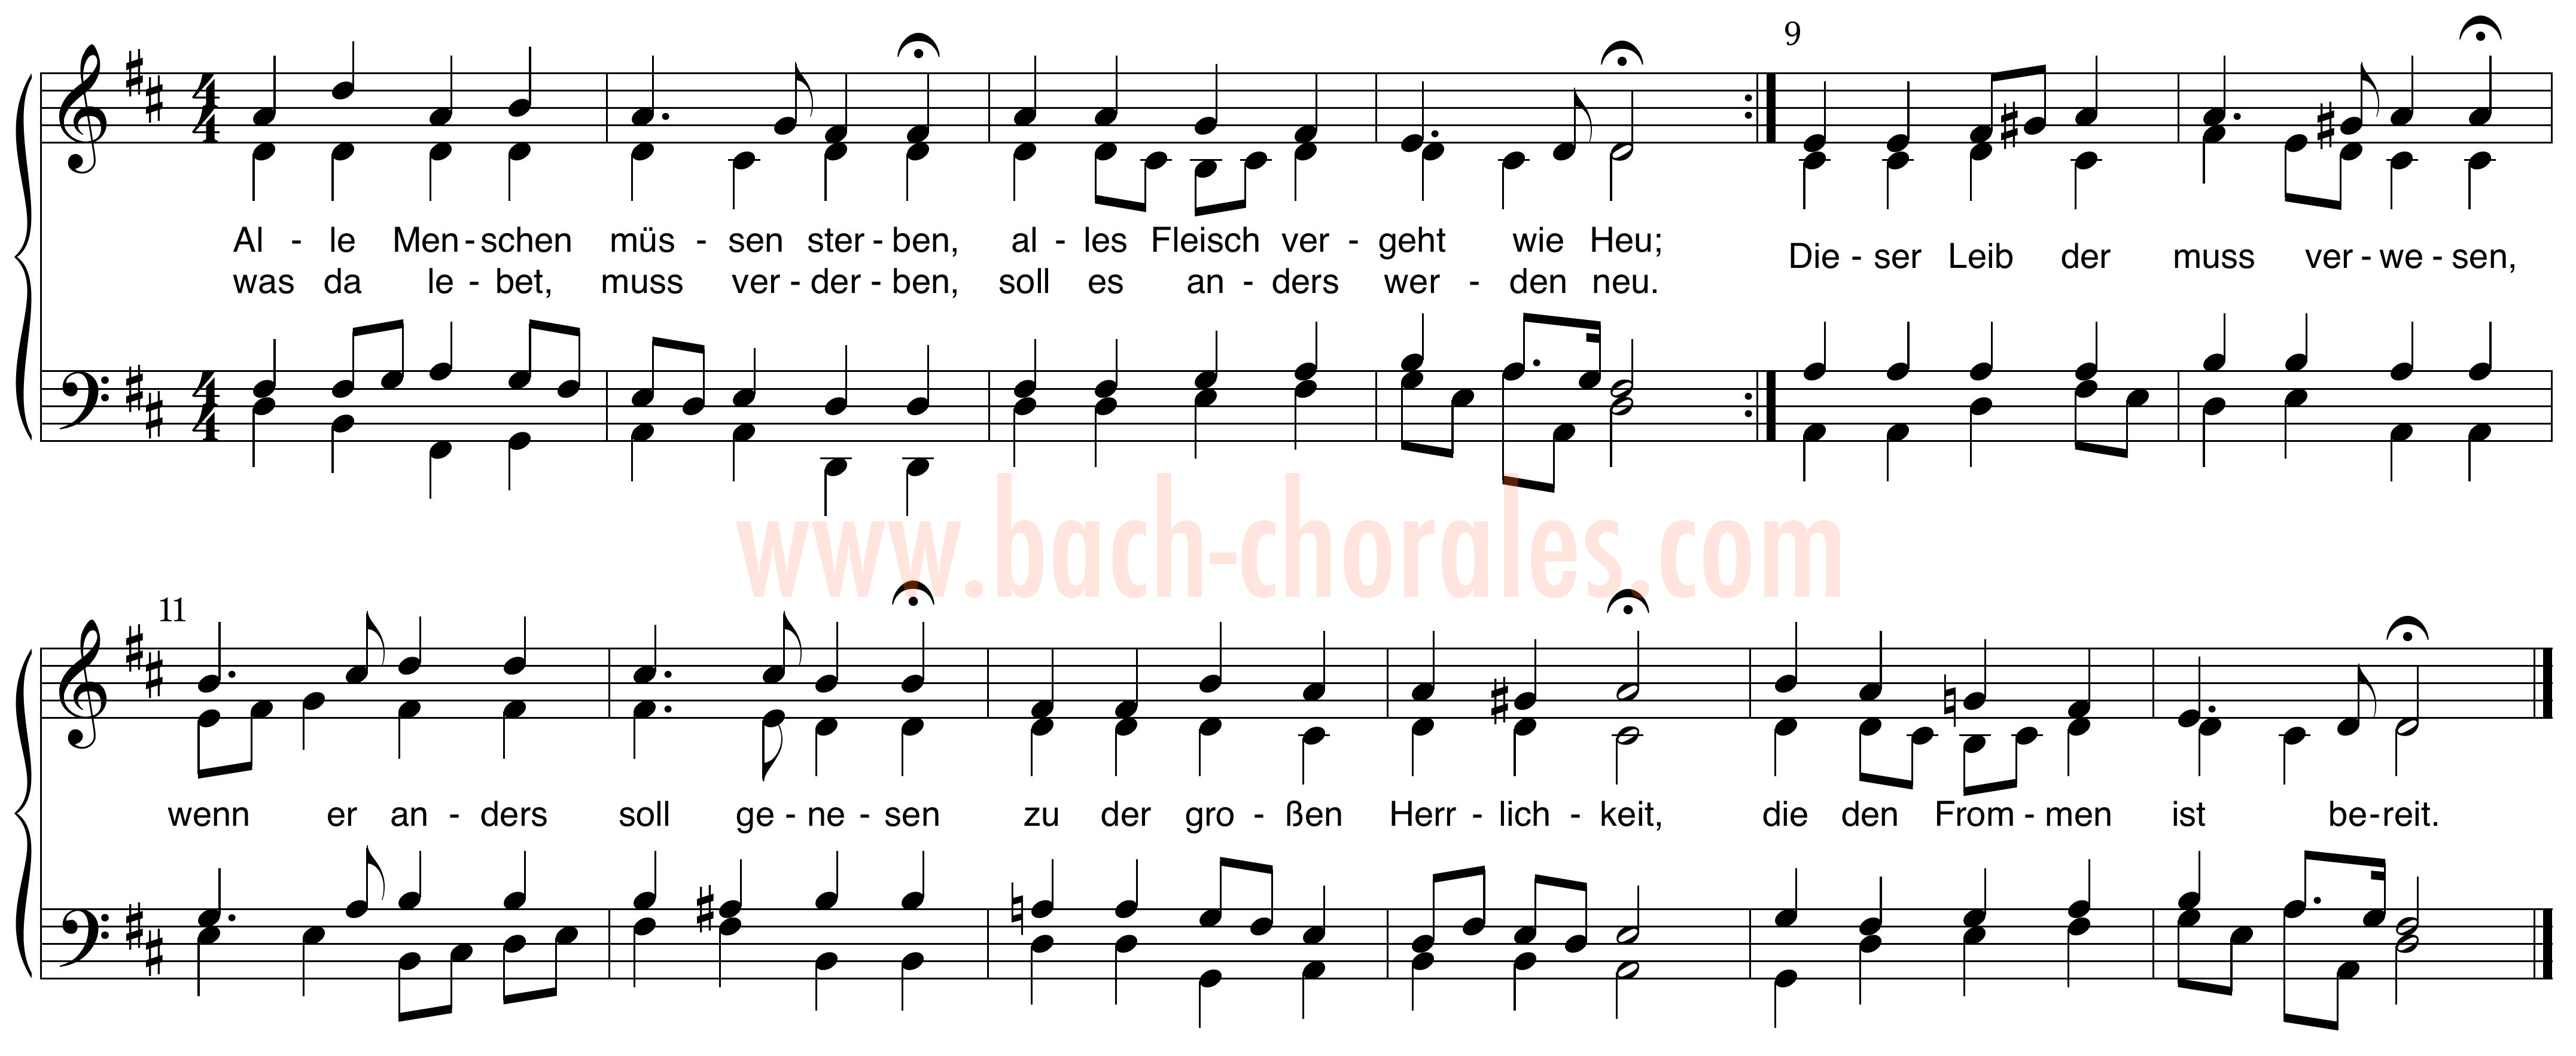 notenbeeld BWV 262 op https://www.bach-chorales.com/